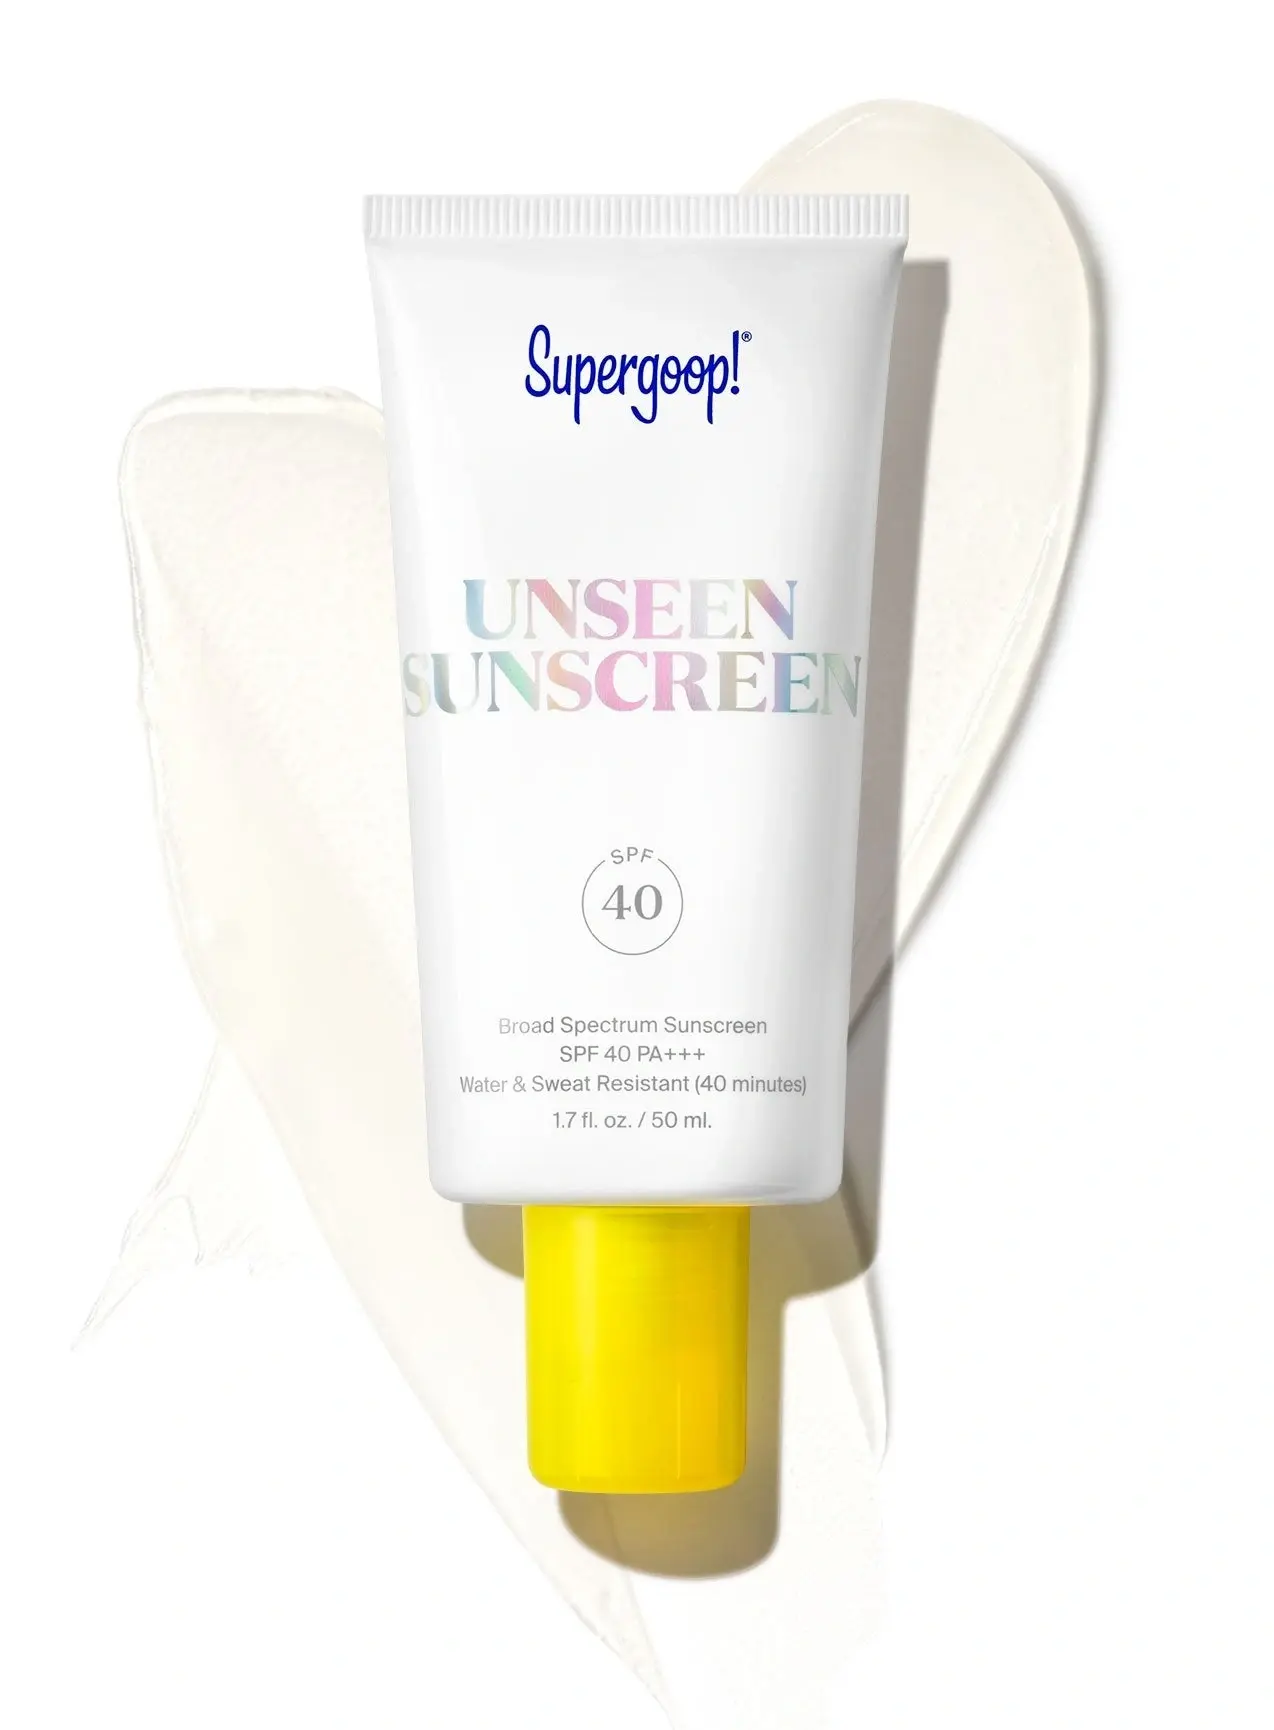 Unseen Sunscreen Broad Spectrum Sunscreen SPF 40 PA+++ from Supergoop!